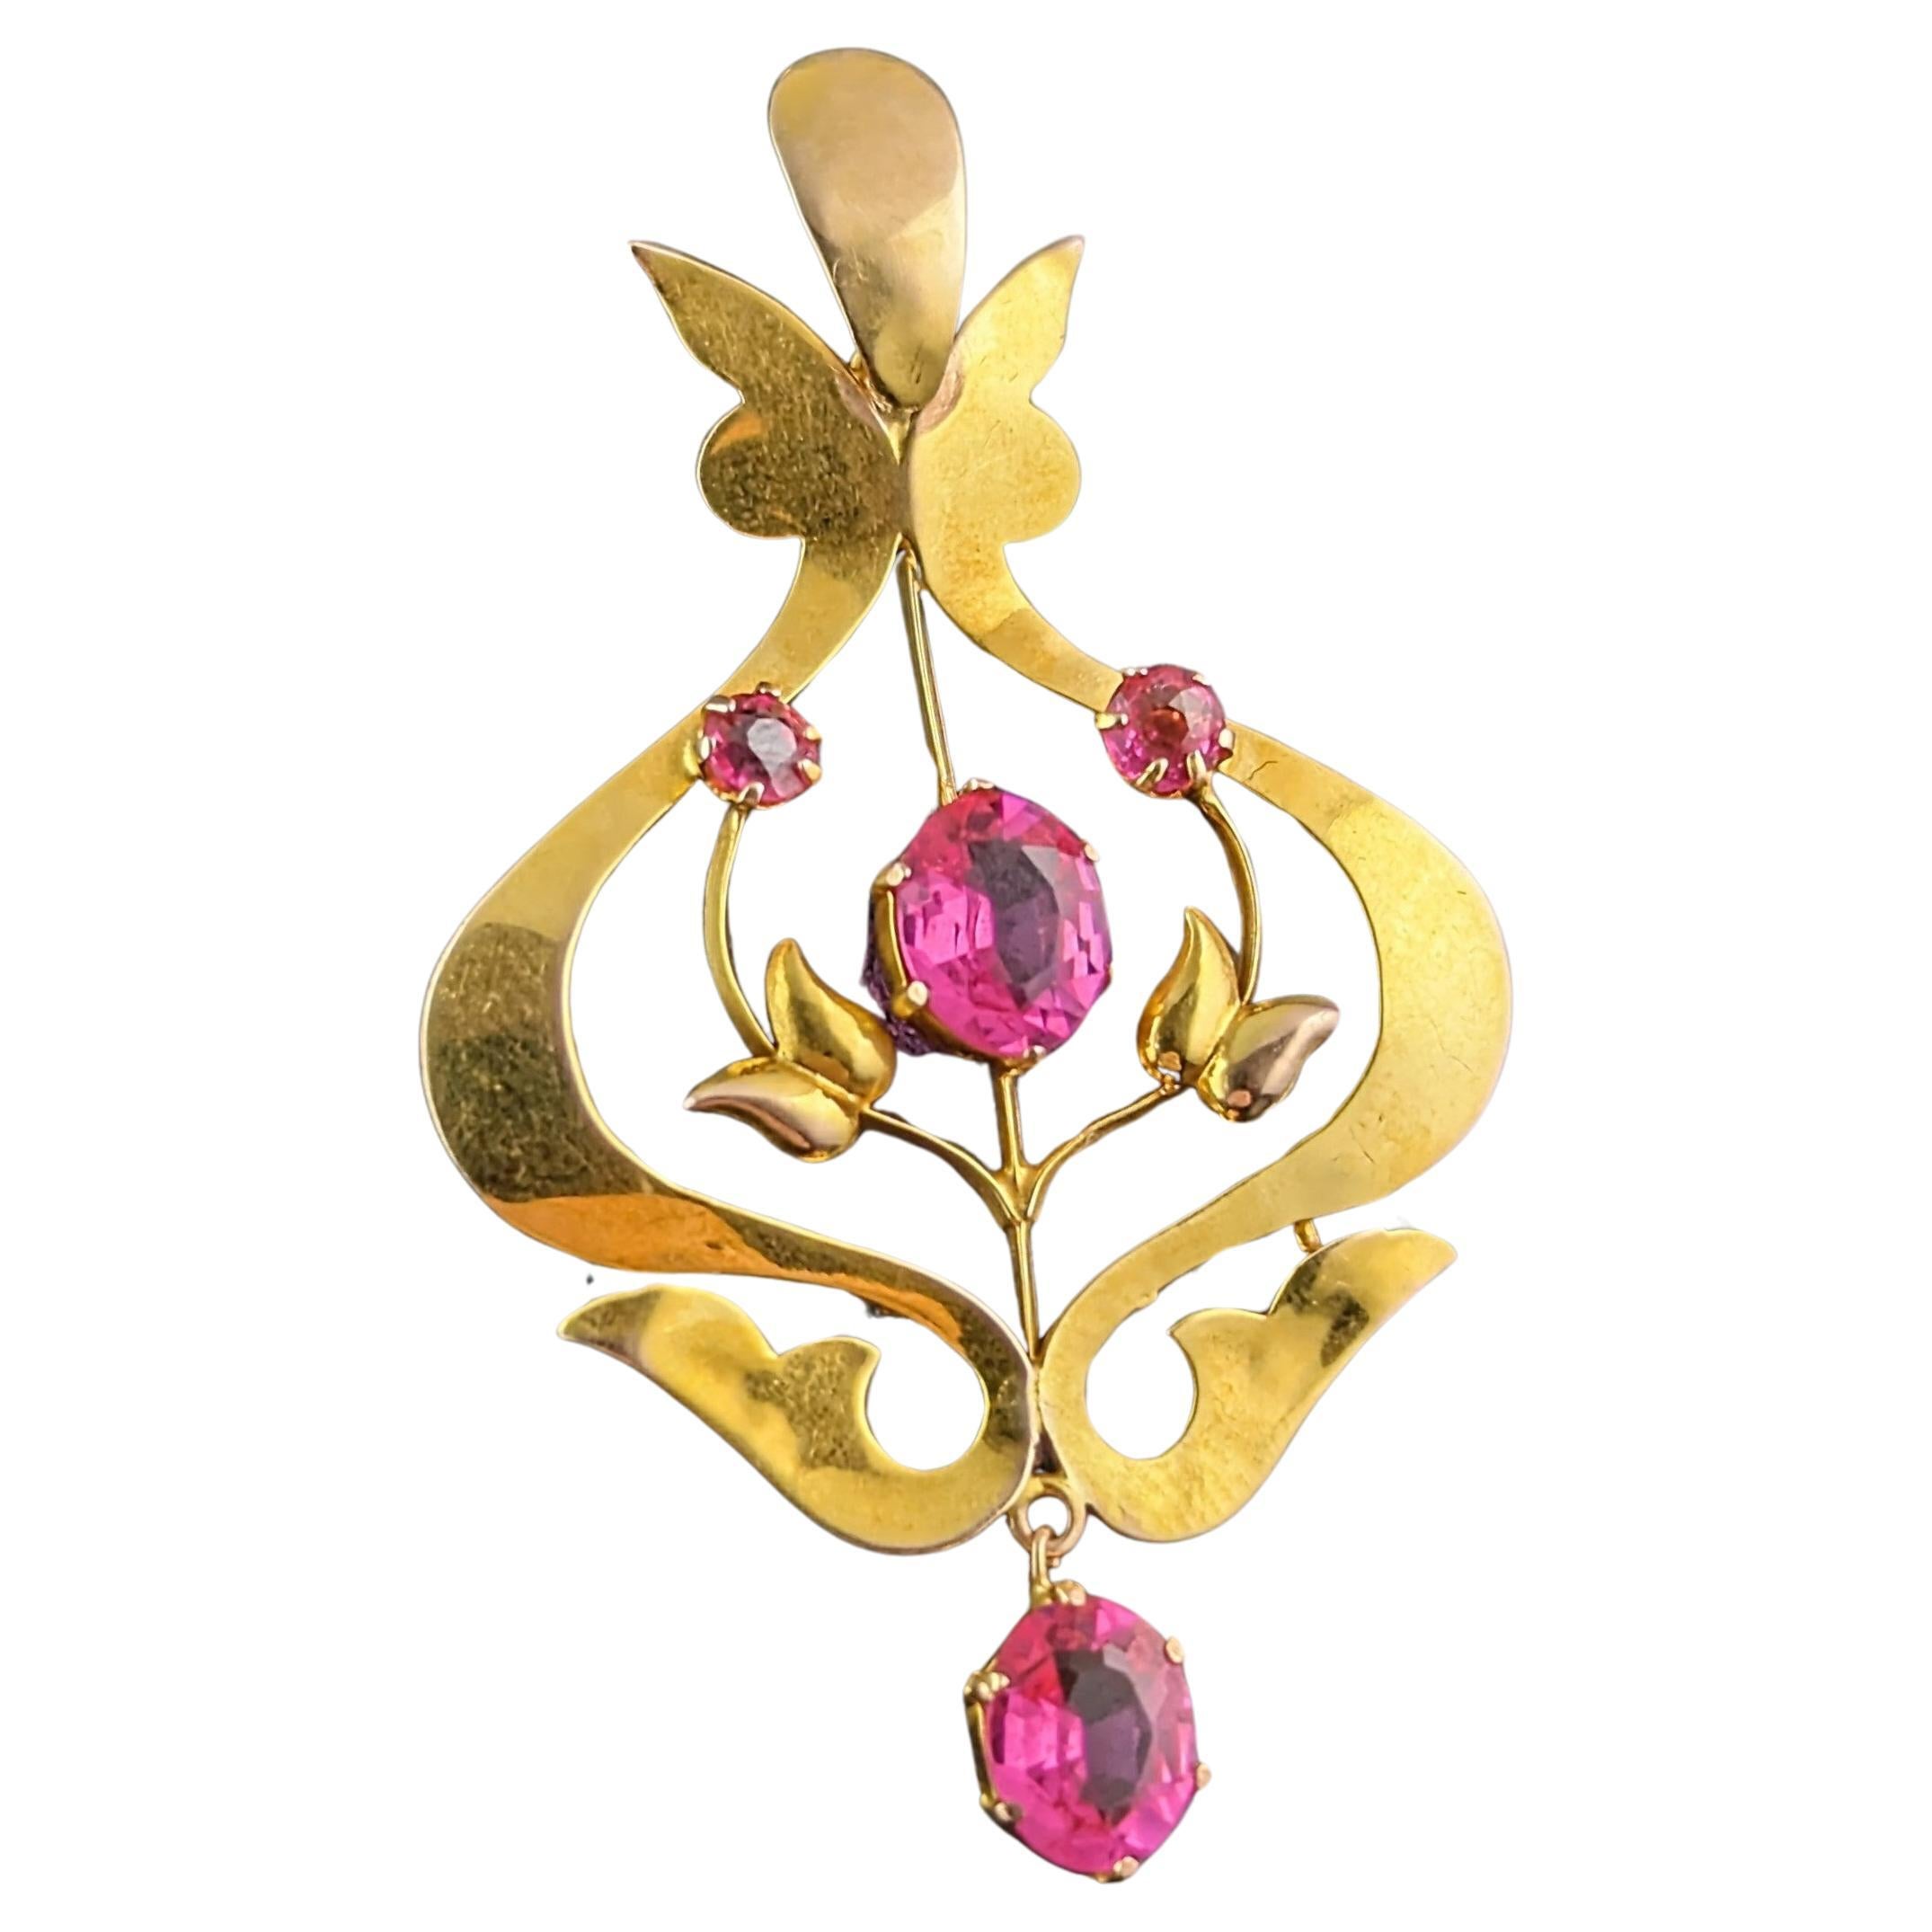 Antique 9k gold and Pink paste pendant, Art Nouveau 